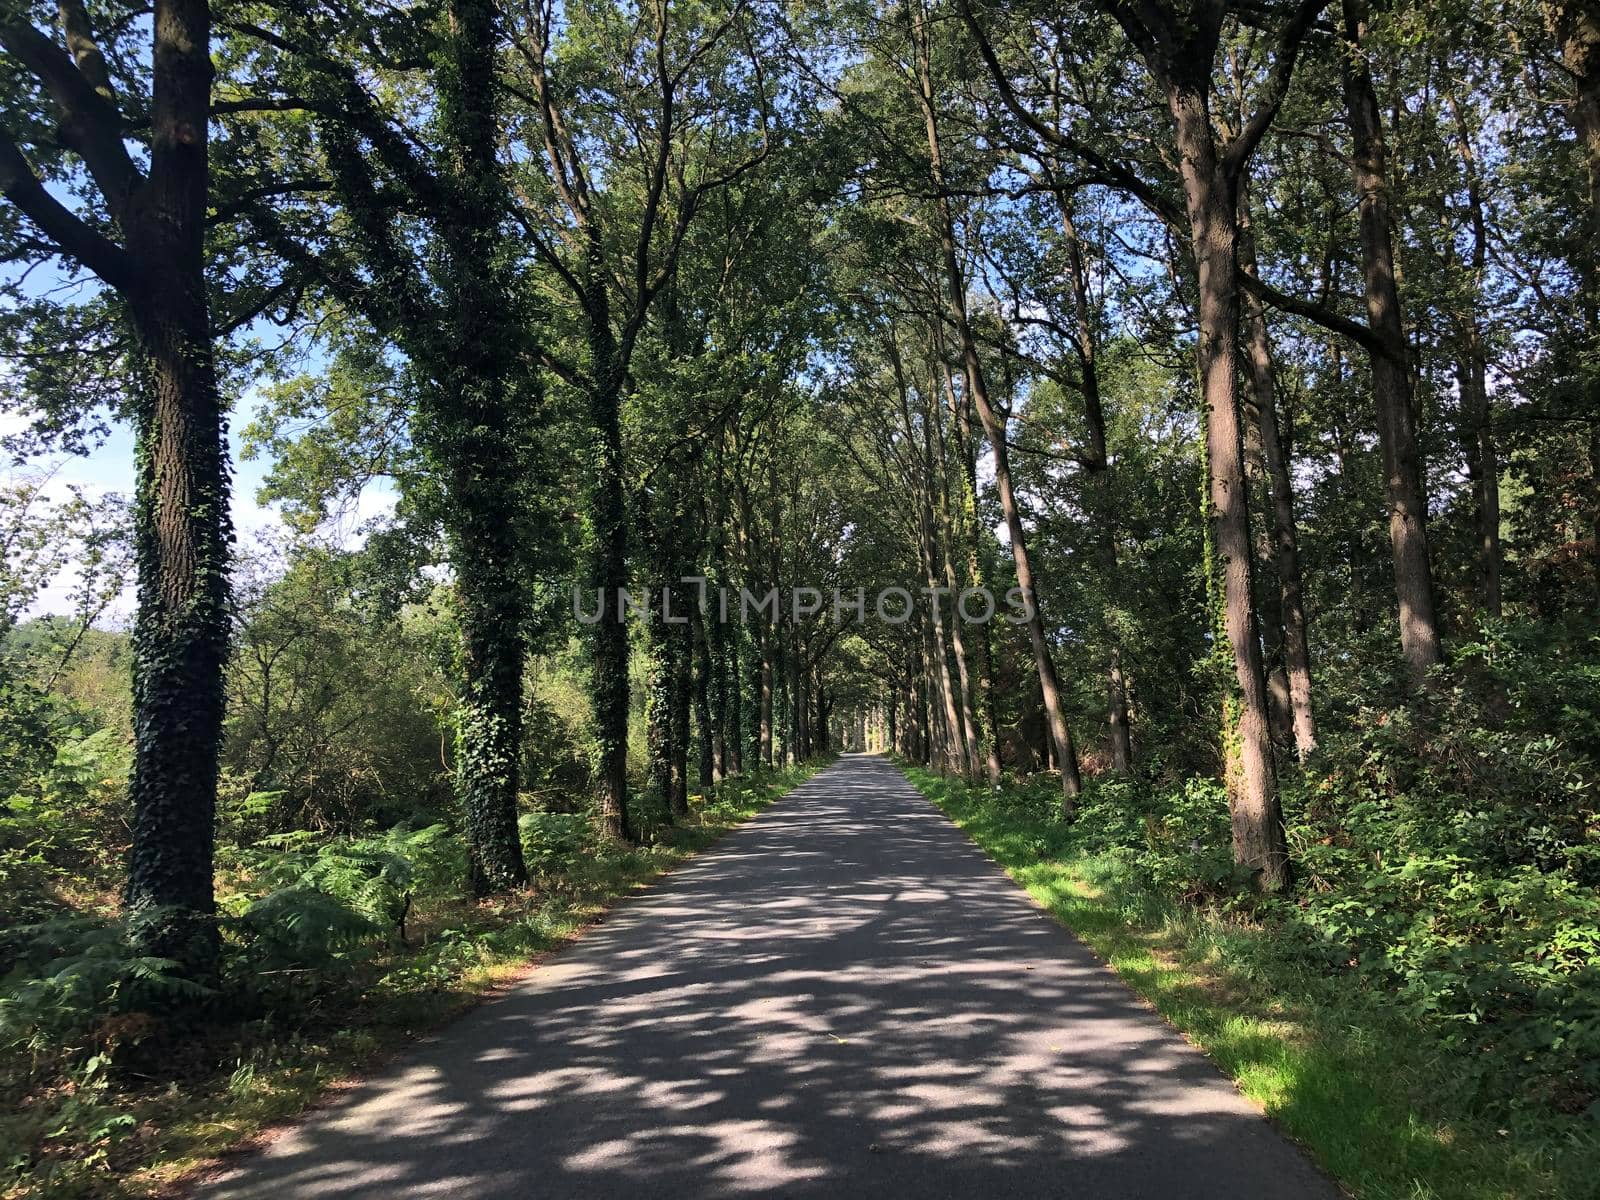 Road through the forest around Vorden, The Netherlands